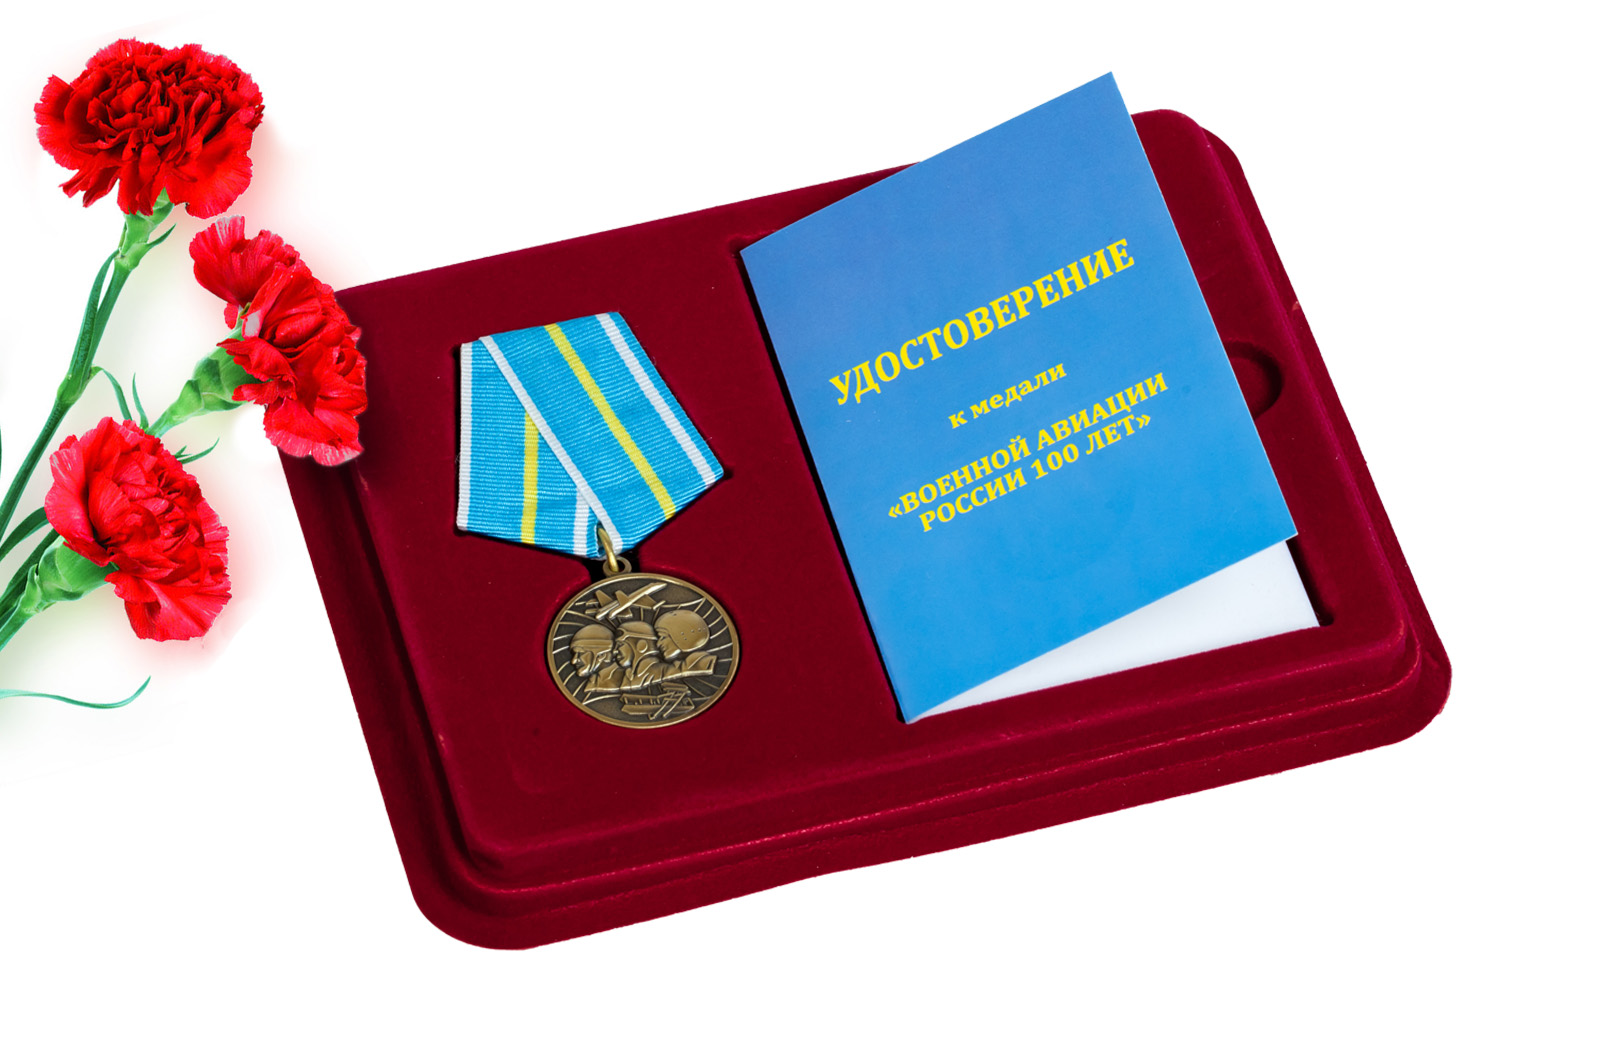 Купить юбилейную медаль 100 лет Военной авиации России в подарок